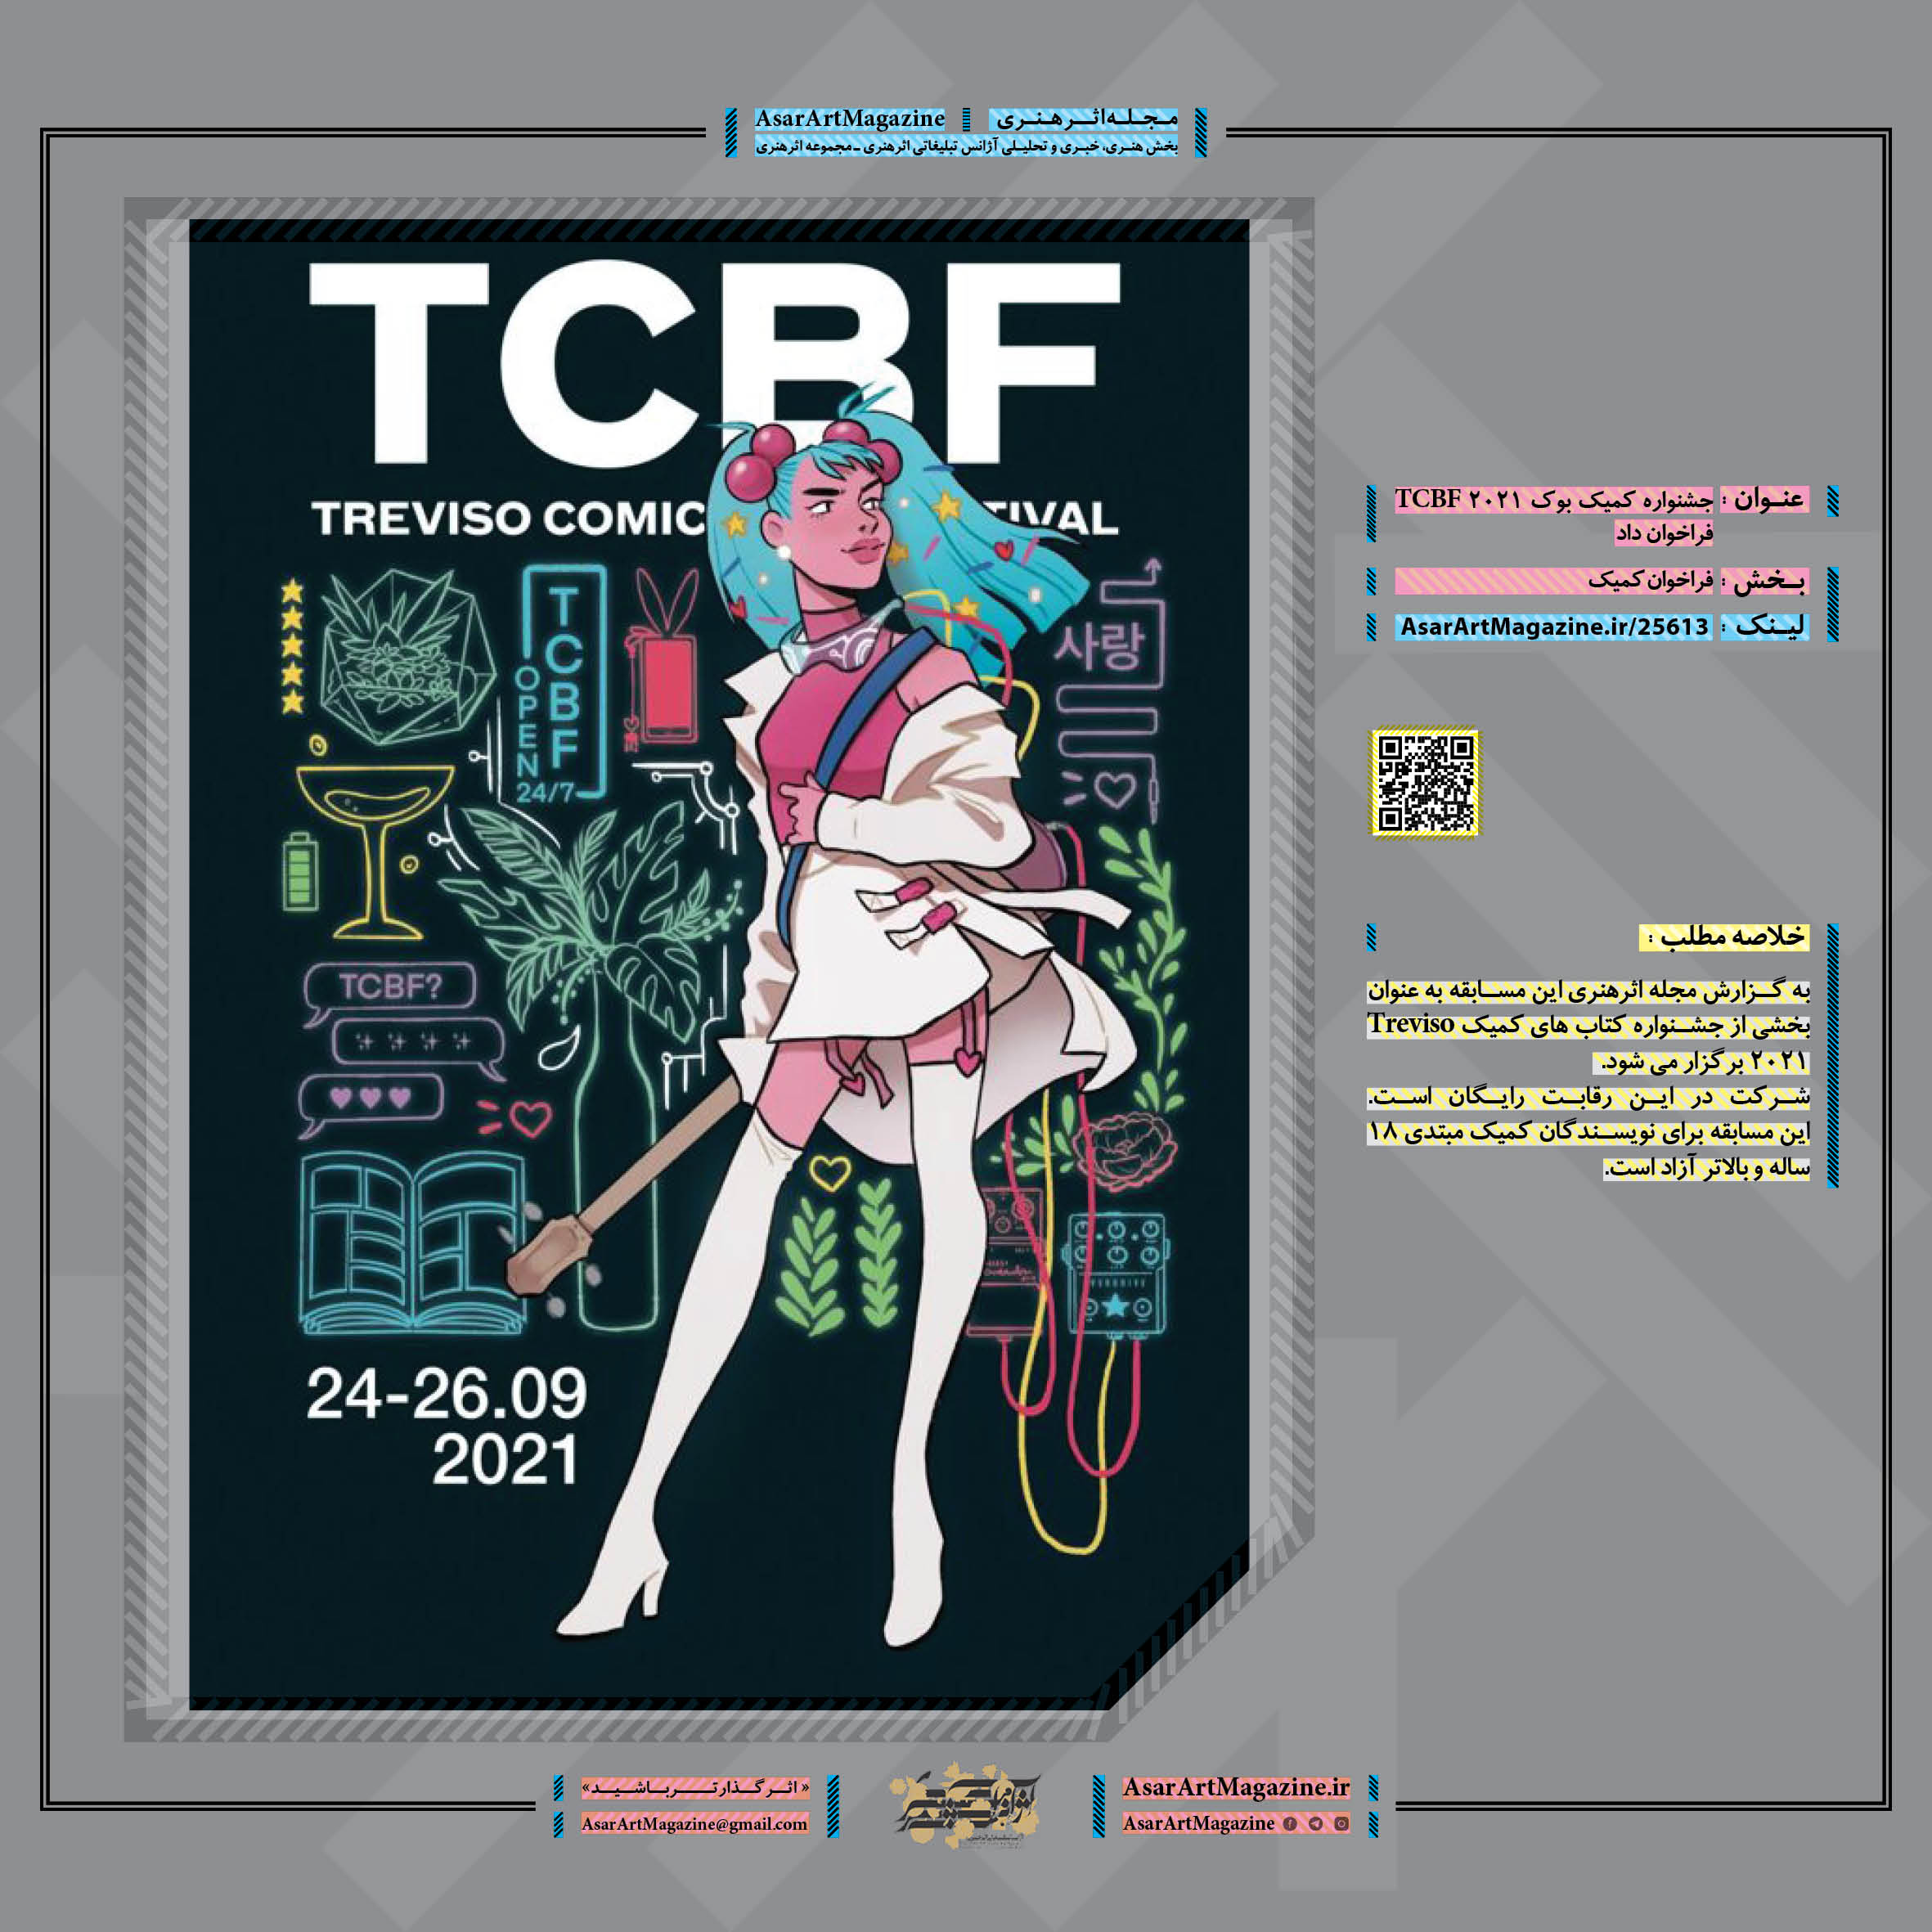 جشنواره کمیک بوک TCBF 2021 فراخوان داد  |  مجله اثرهنری، بخش هنری، خبری و تحلیلی مجموعه اثرهنری | مجله اثر هنری  ـ «اثرگذارتر باشید»